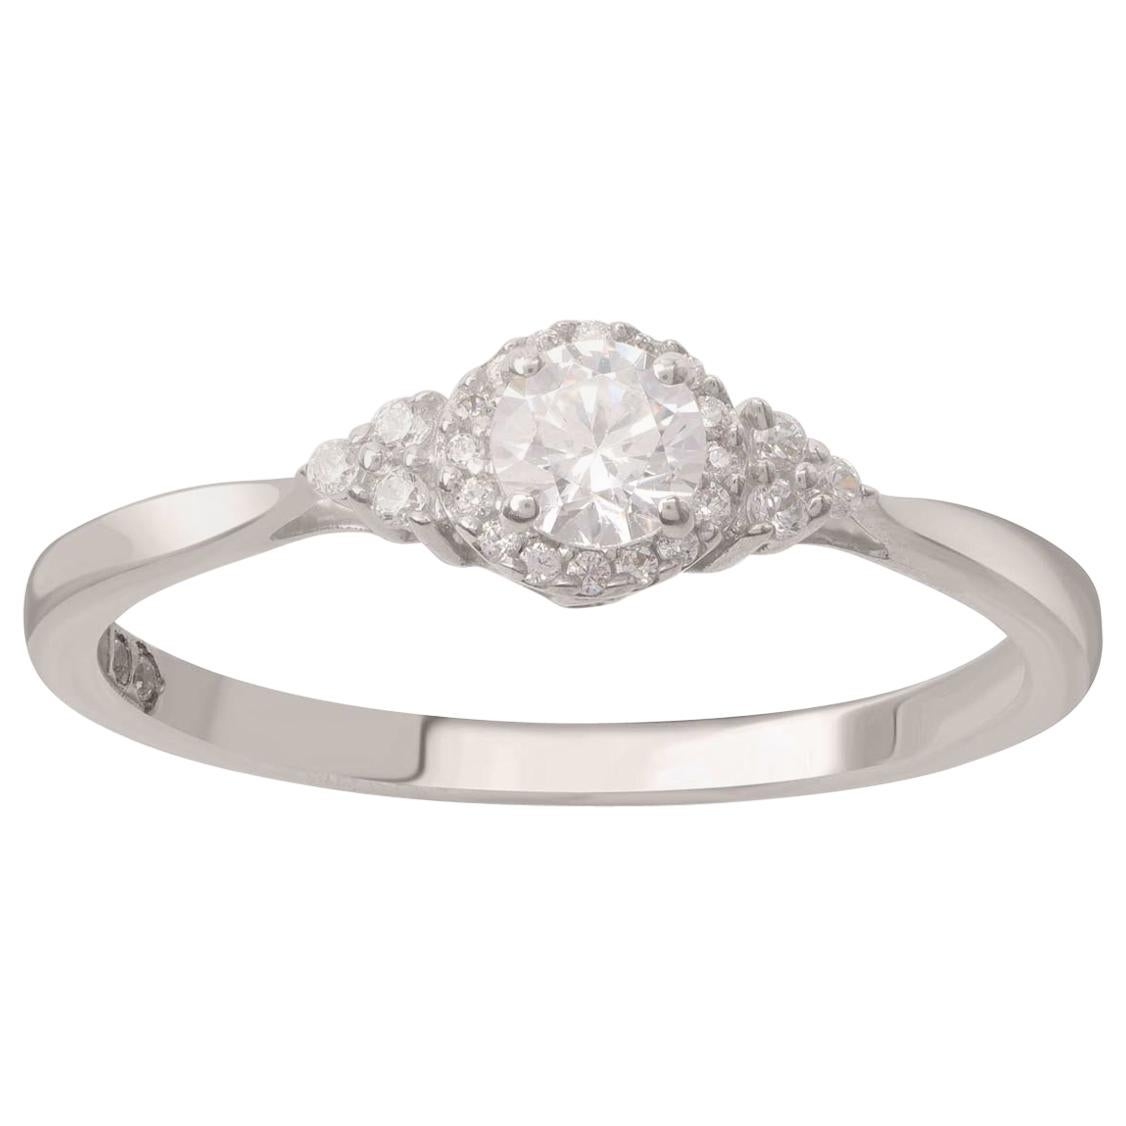 TJD 0.33 Carat Round Diamond 18 Karat White Gold Halo Vintage Engagement Ring